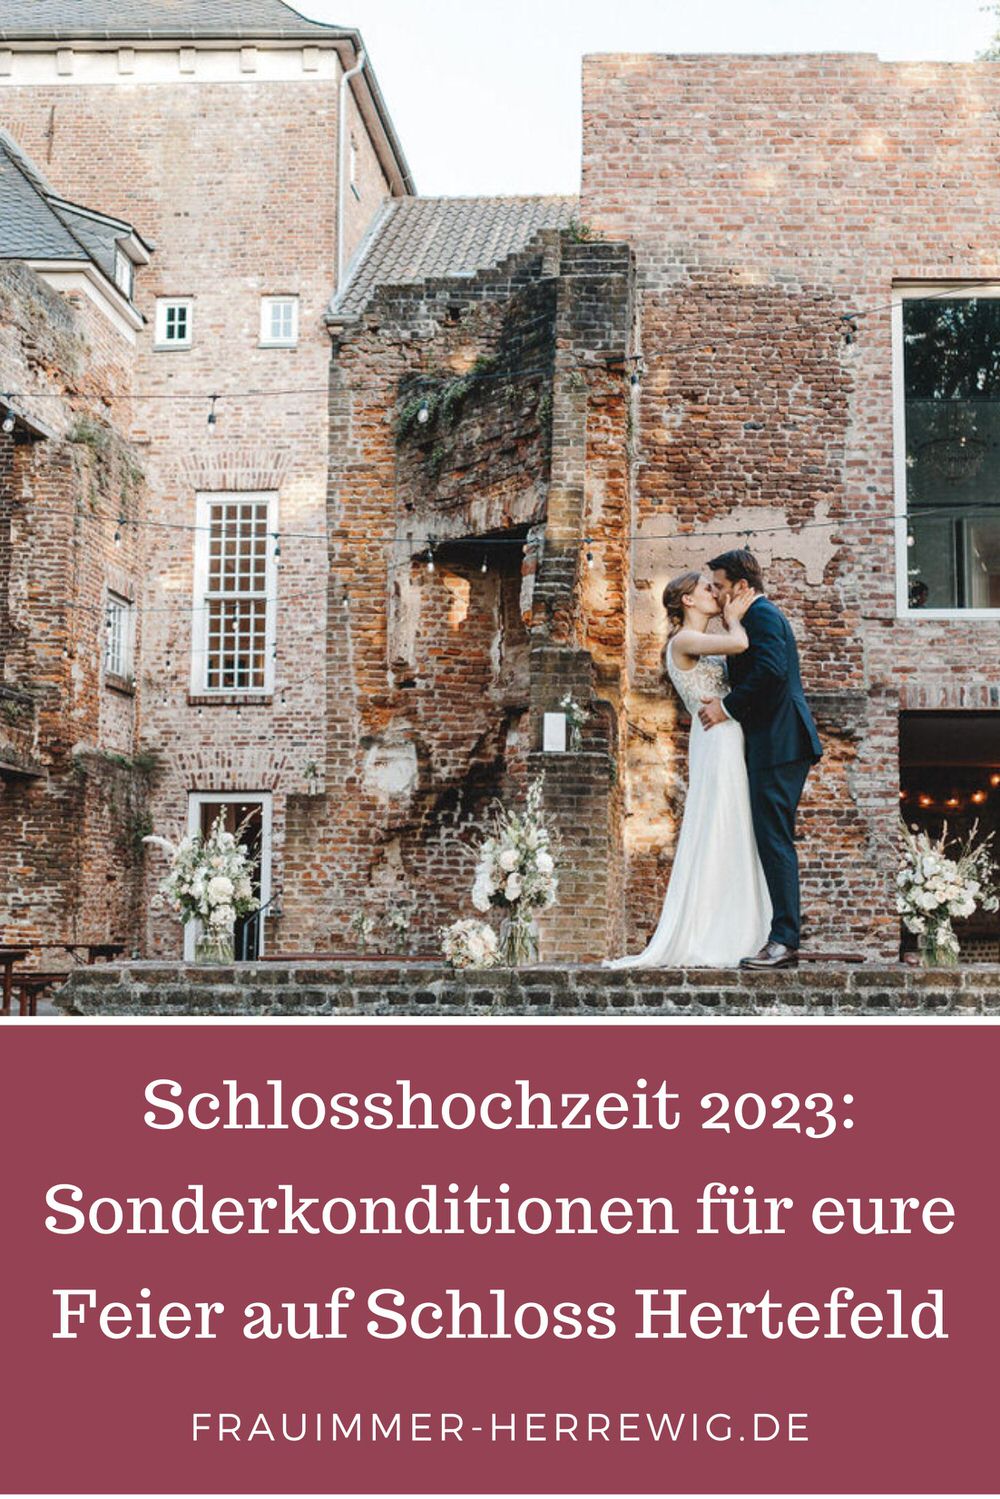 Hochzeit auf schloss hertefeld – gesehen bei frauimmer-herrewig.de